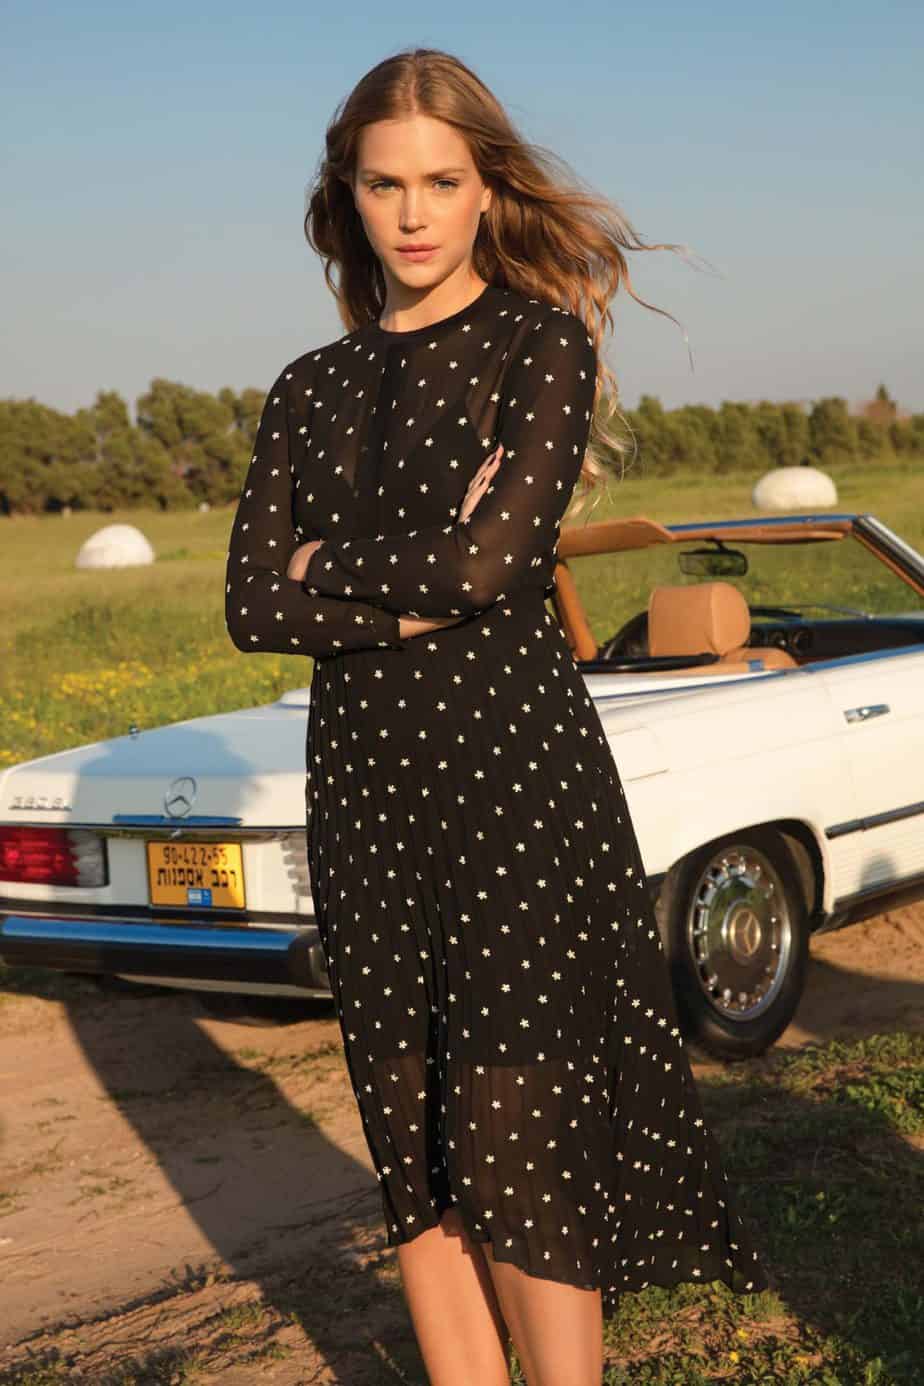 אסתי גינזבורג, גולברי שמלה 449.90 שח צילום יניב אדרי (4)